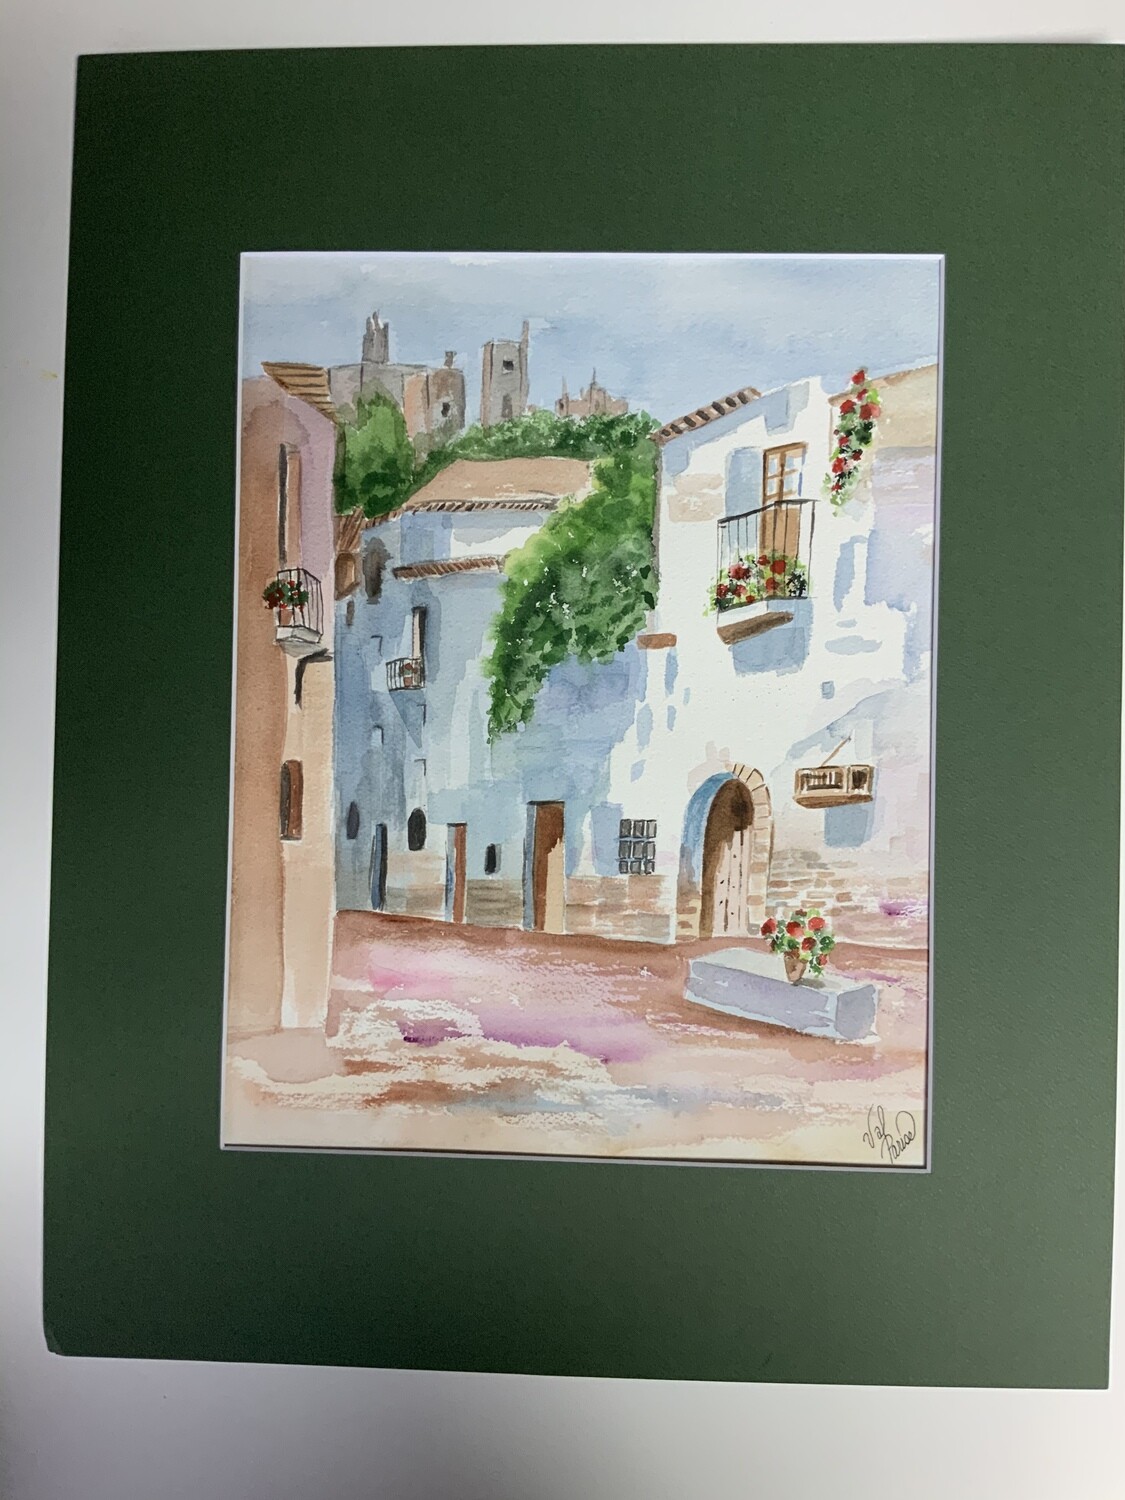 watercolor“Returning home” small village scene